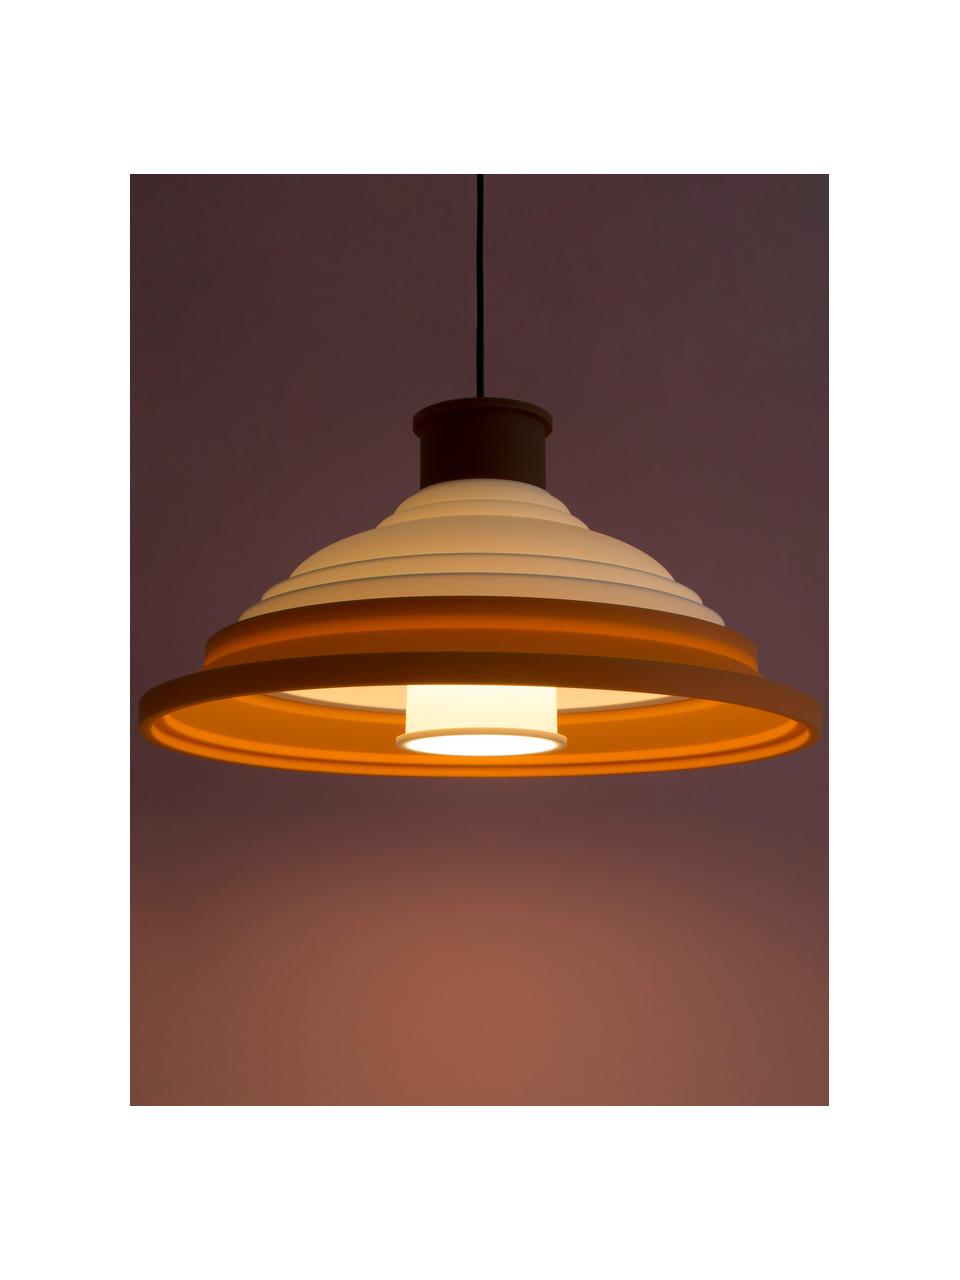 Lampa wisząca CL5, Pomarańczowy, biały, rdzawoczerwony, Ø 41 x W 22 cm